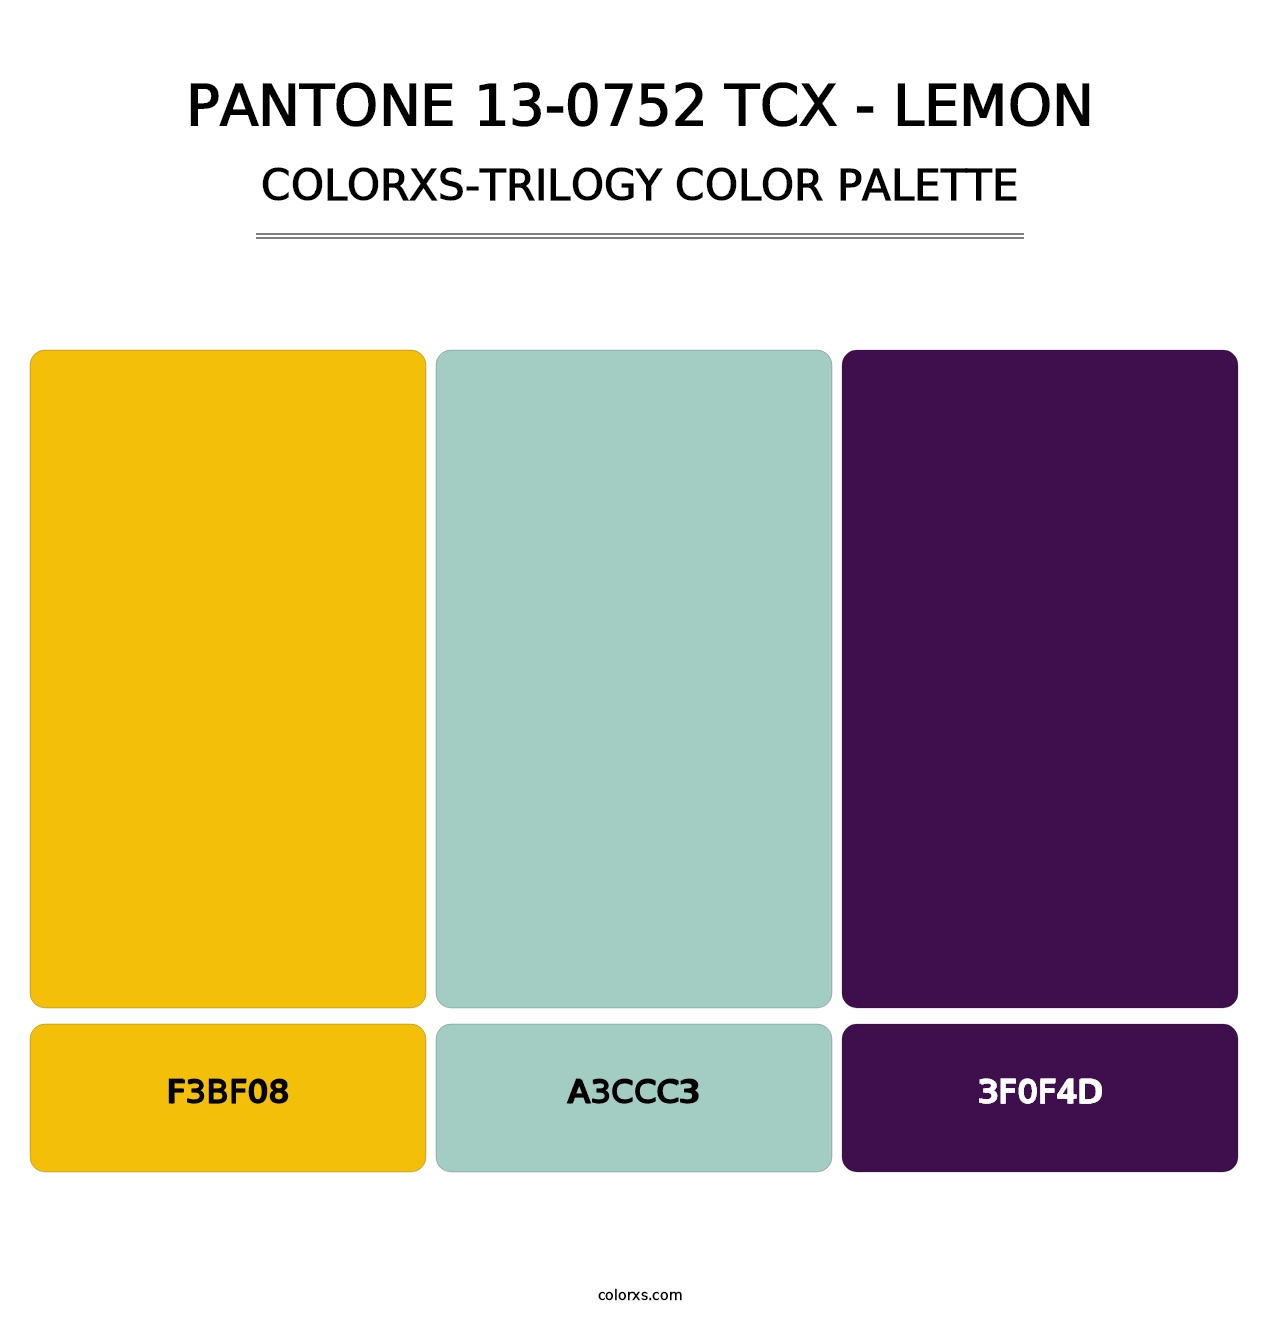 PANTONE 13-0752 TCX - Lemon - Colorxs Trilogy Palette